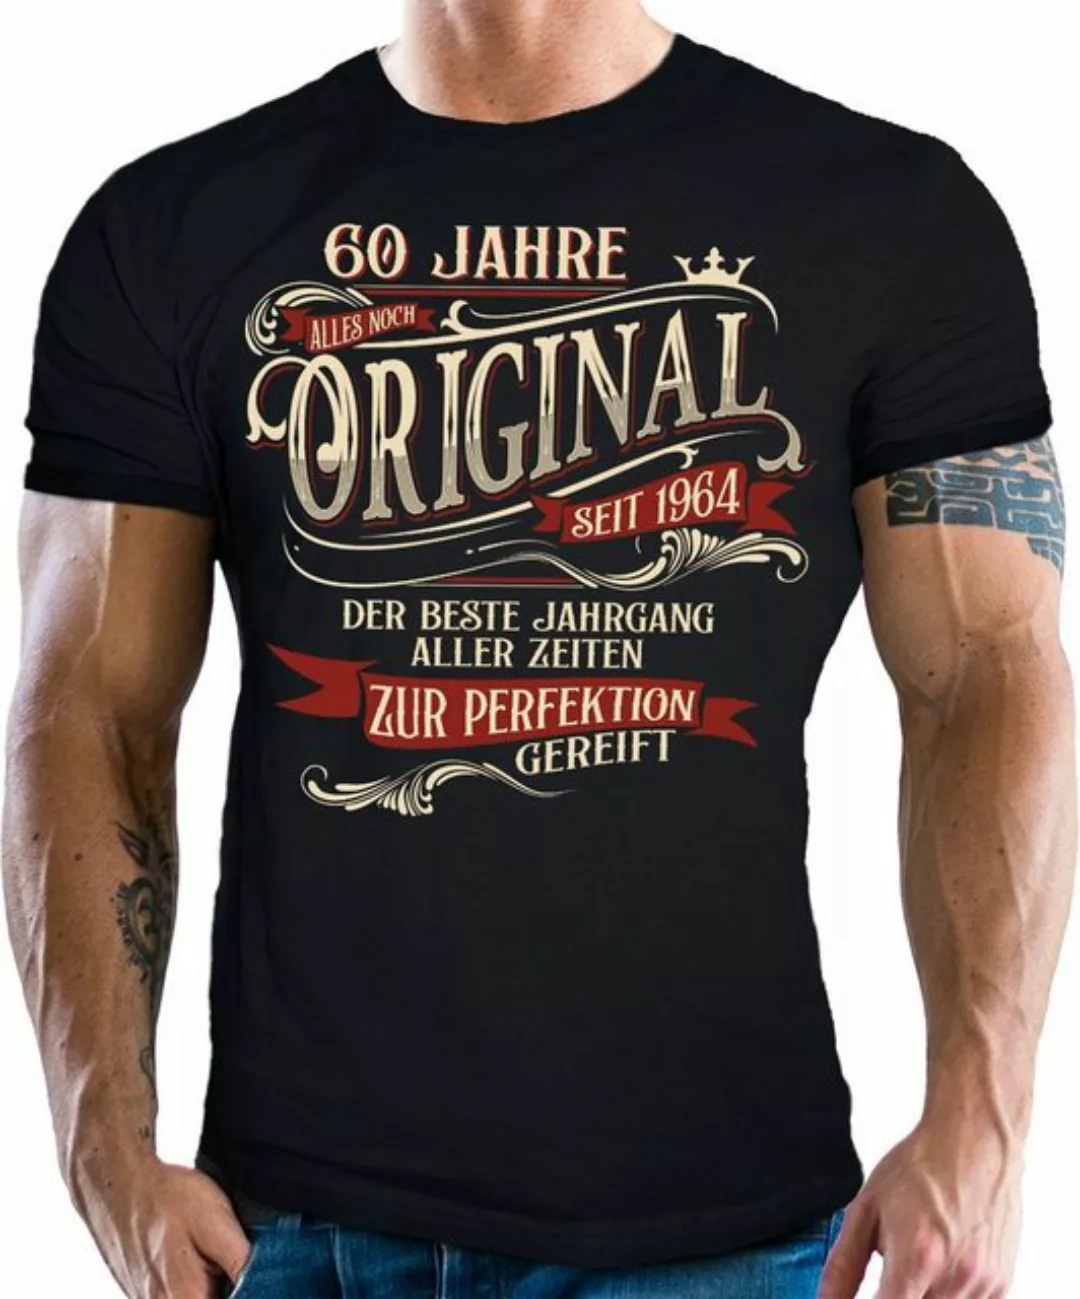 LOBO NEGRO® T-Shirt als Geschenk zum 60. Geburtstag - zur Perfektion gereif günstig online kaufen